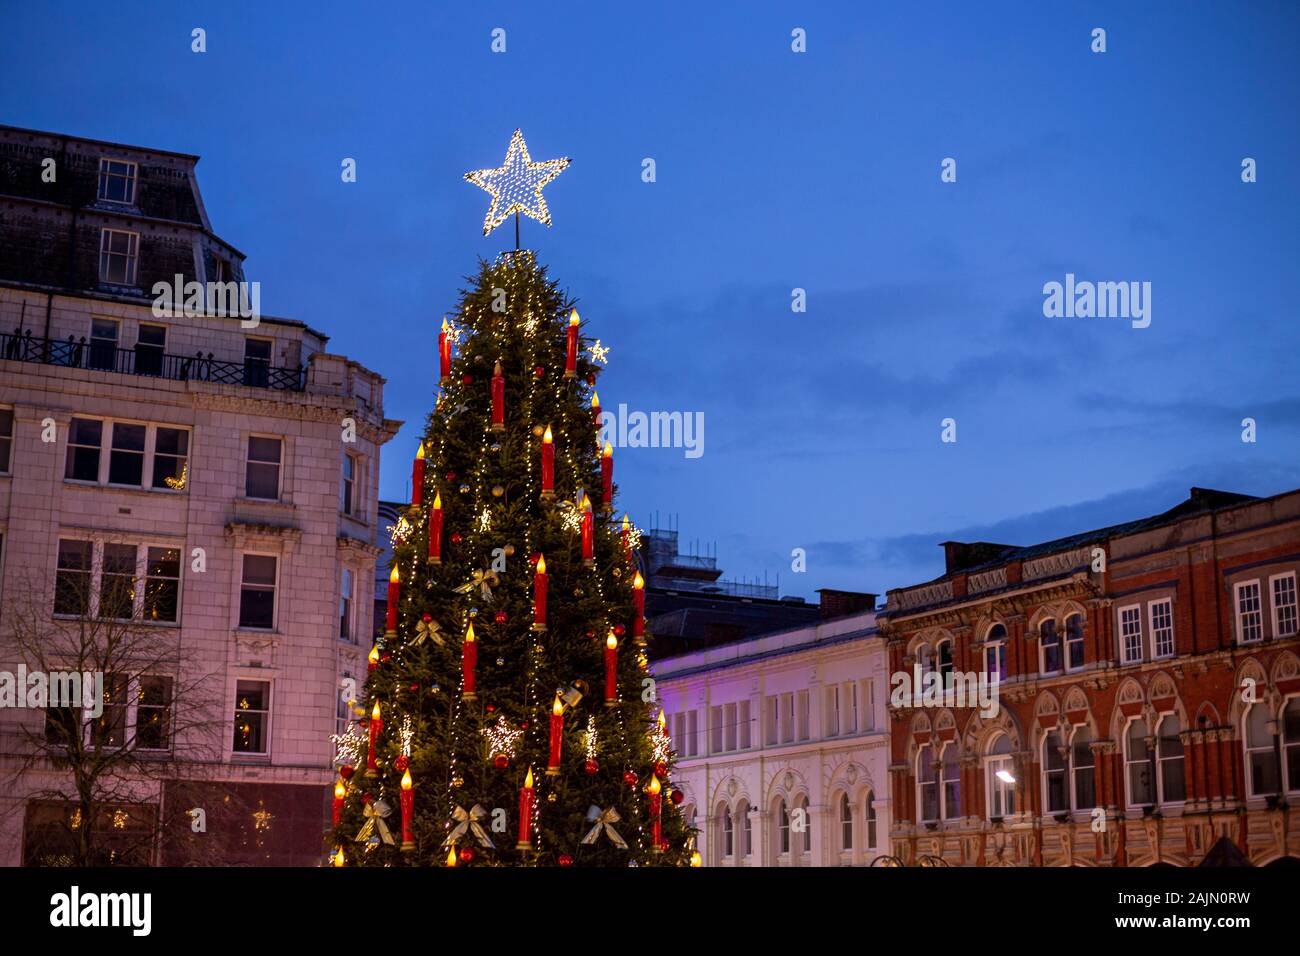 BIRMINGHAM, Großbritannien - 15 Dezember, 2019: Victoria Square Weihnachtsbaum während der jährlichen Weihnachten Fraknkfurt Markt Stockfoto